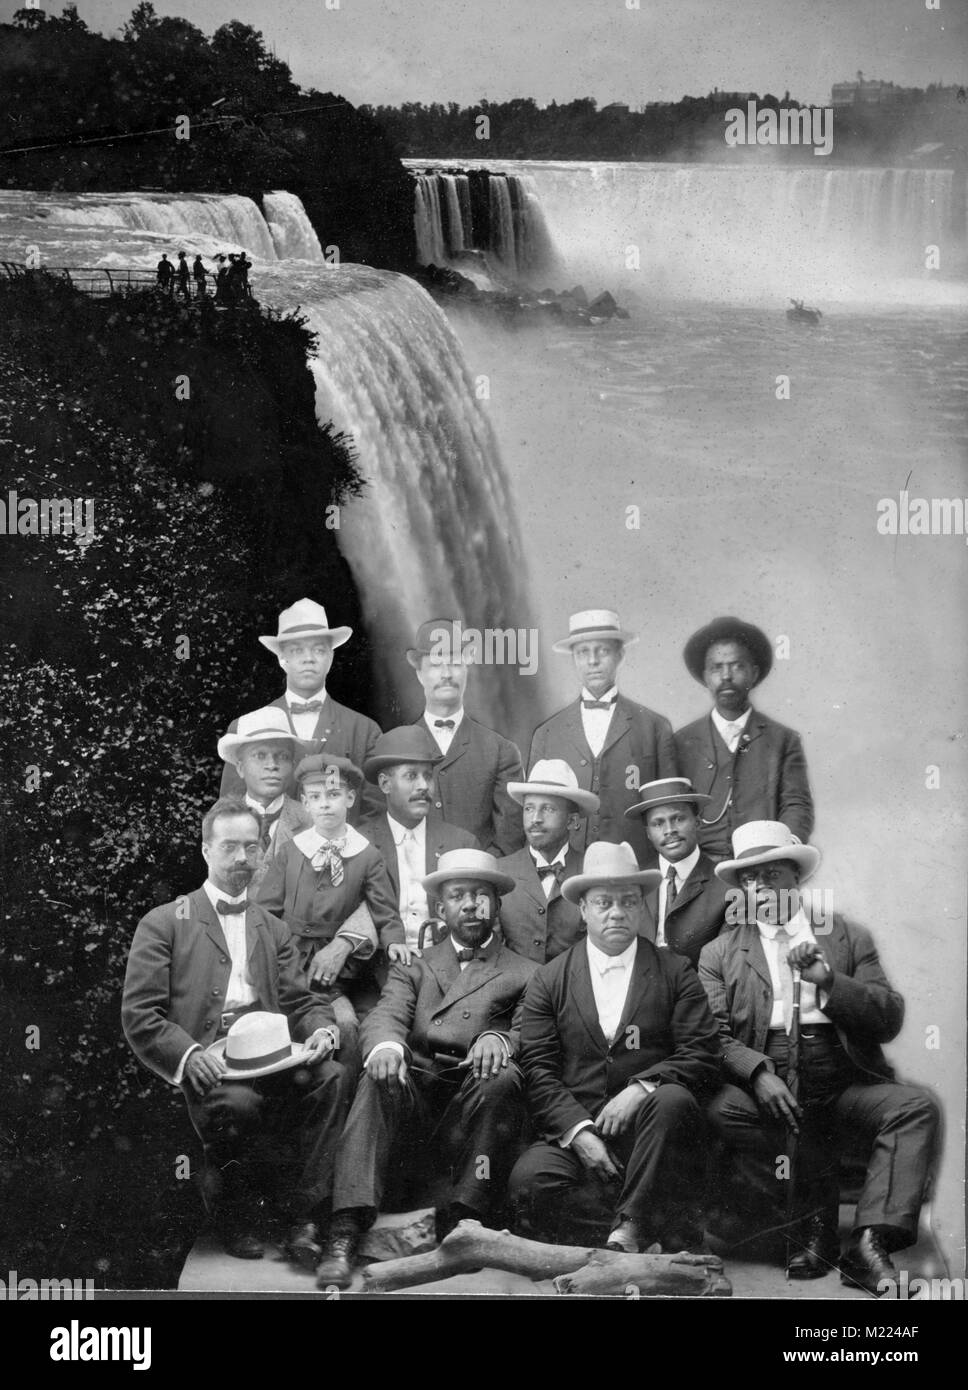 Movimento Niagara fondatori del 1905, i membri fondatori del movimento Niagara sovrapposto ad un'immagine che mostra le Cascate del Niagara, Foto Stock